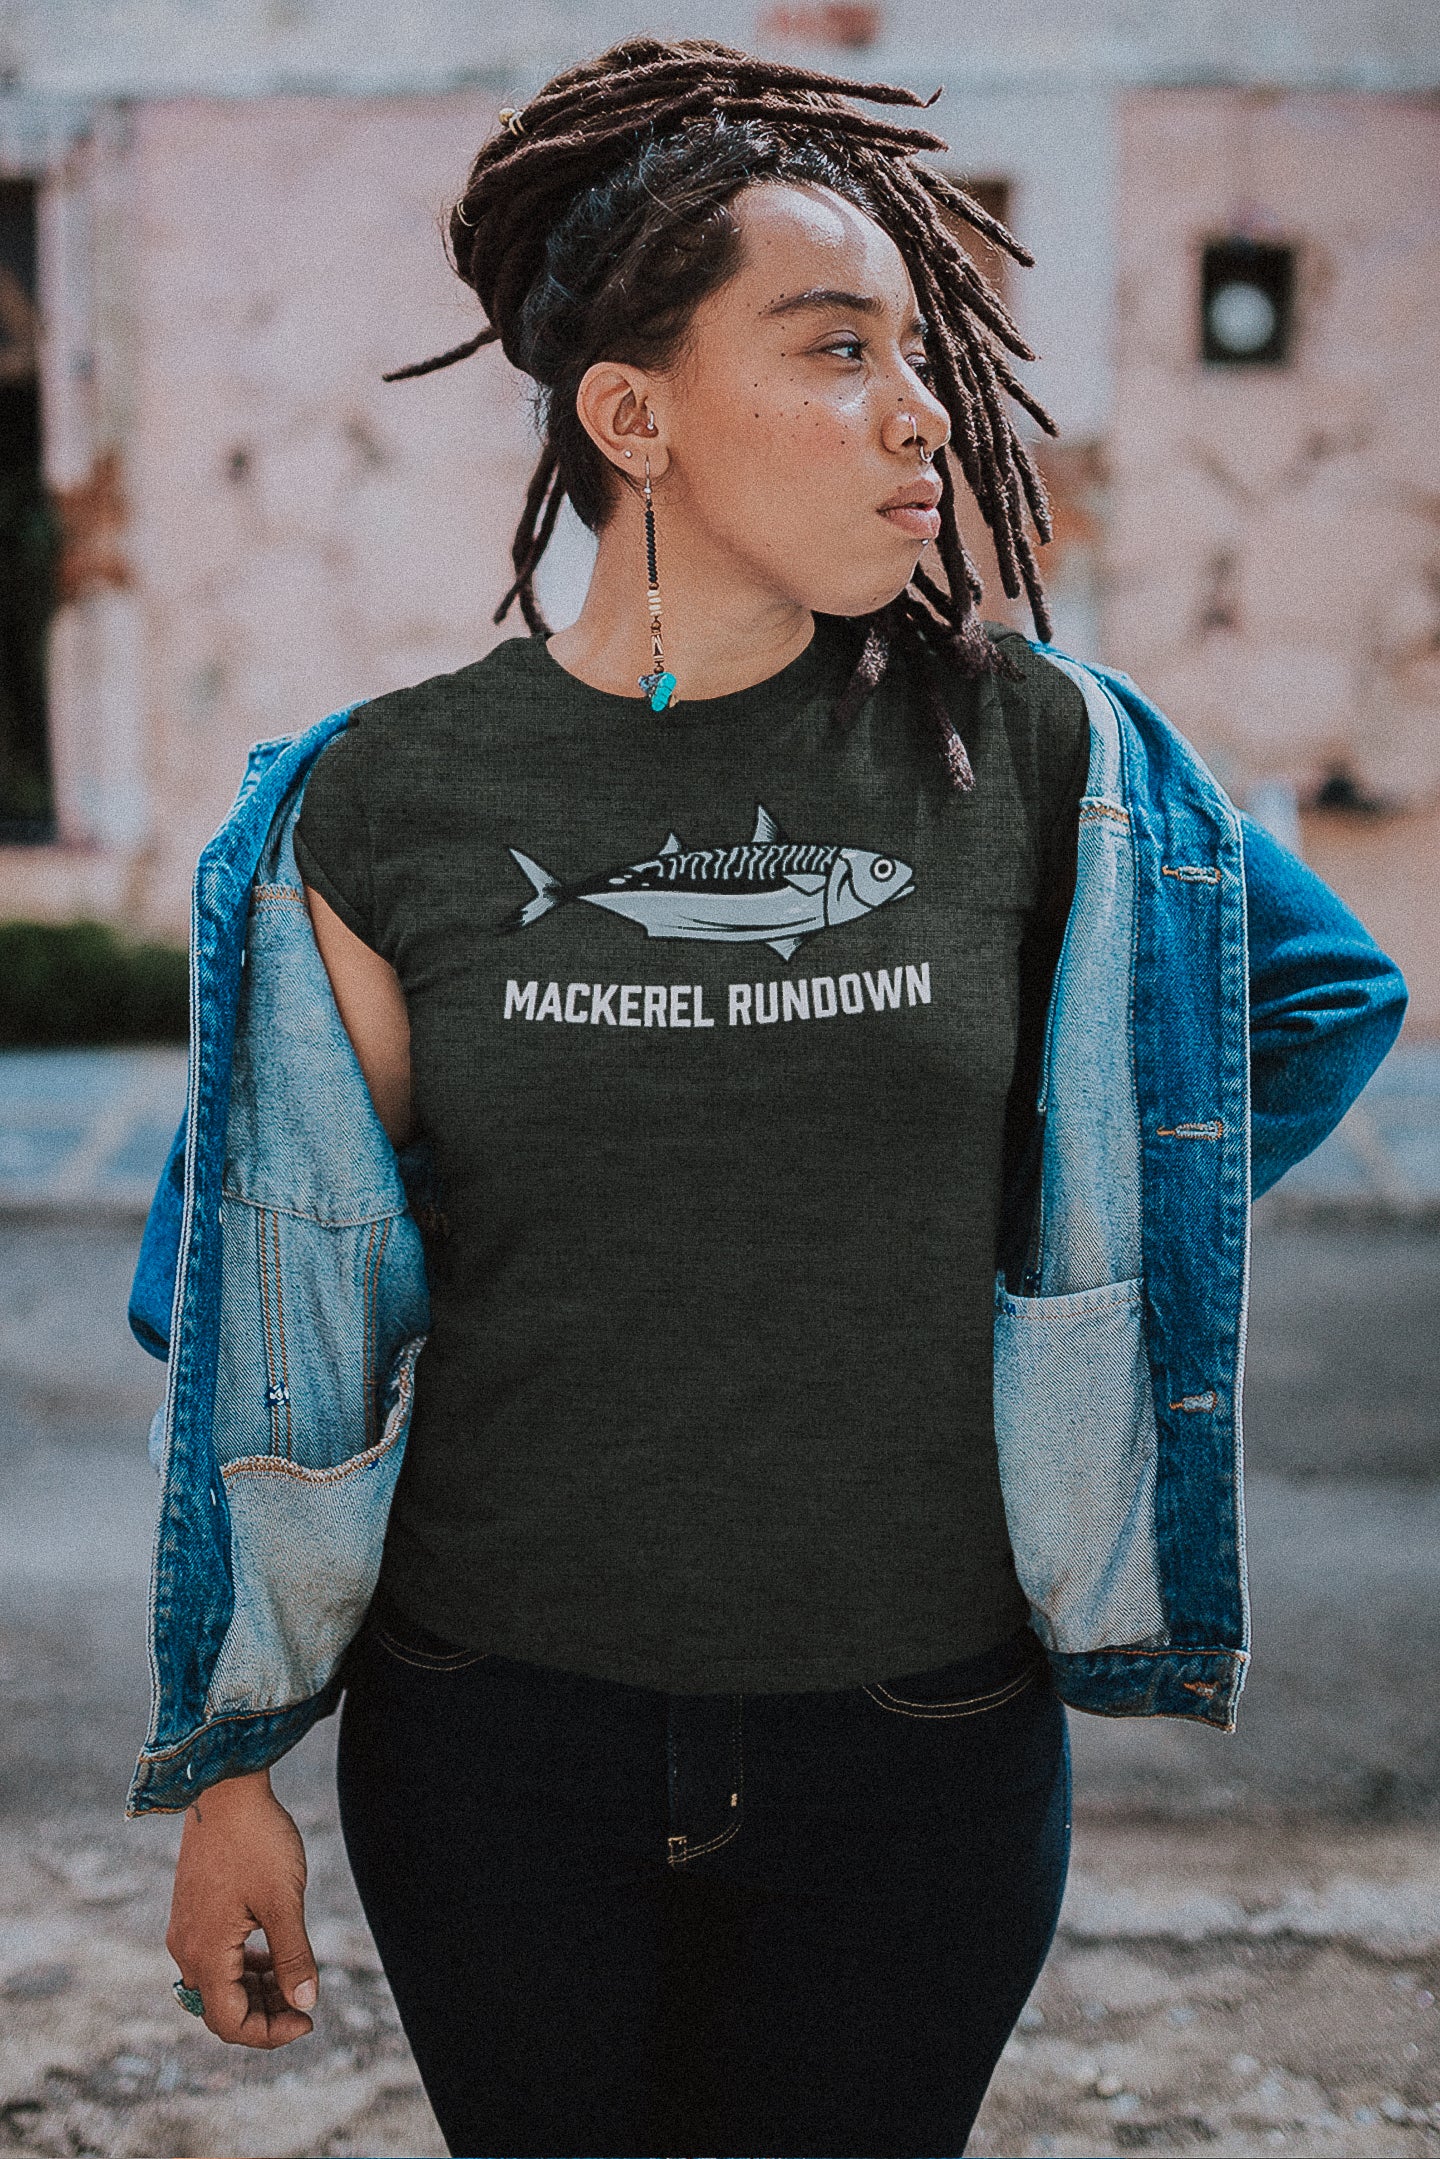 Mackerel Rundown